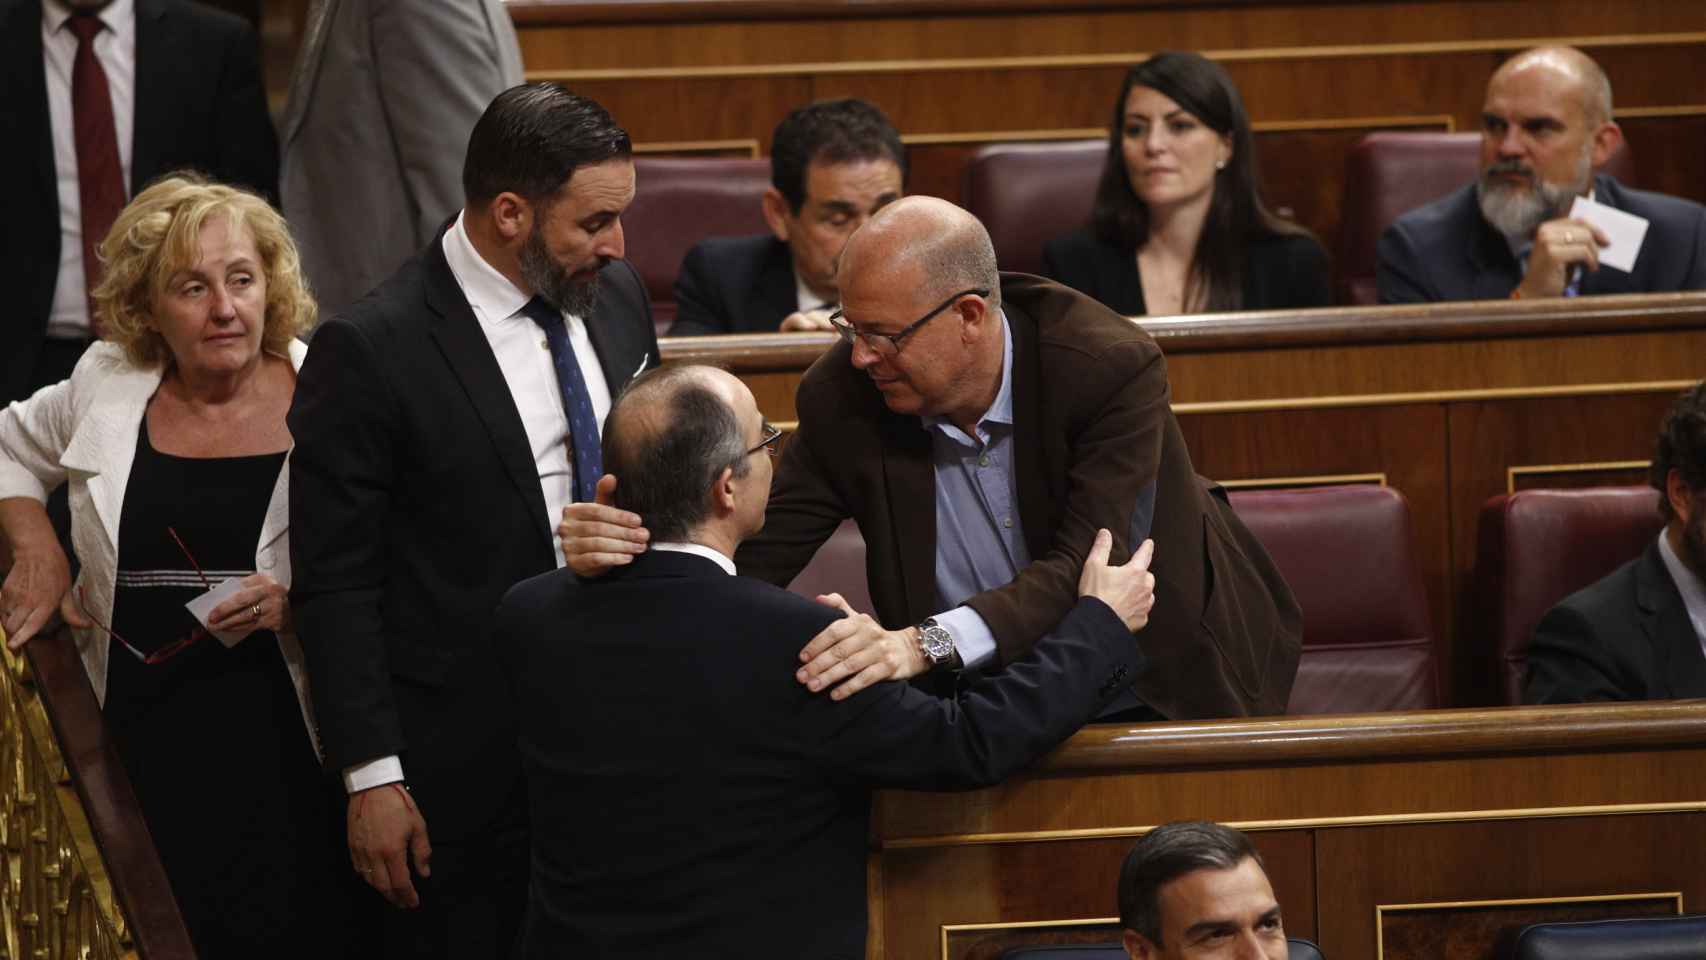 José Zaragoza saluda en el Congreso al indultado Jordi Turull, de espaldas